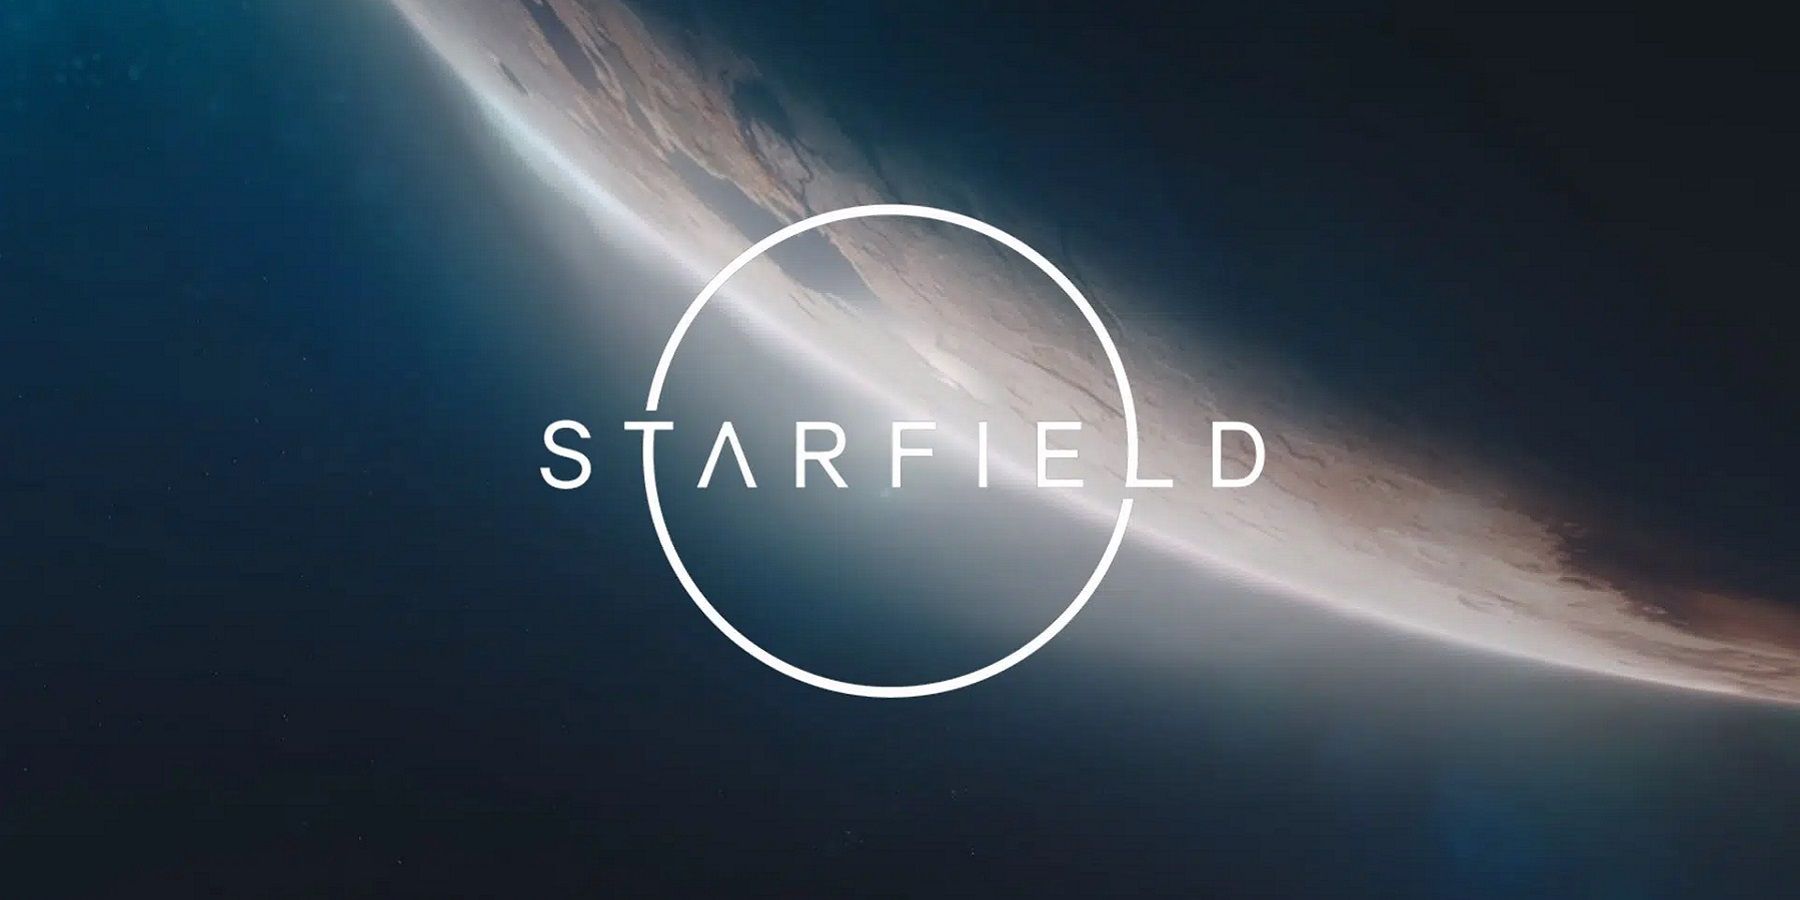 Le logo Starfield avec une planète sombre et imminente en arrière-plan.